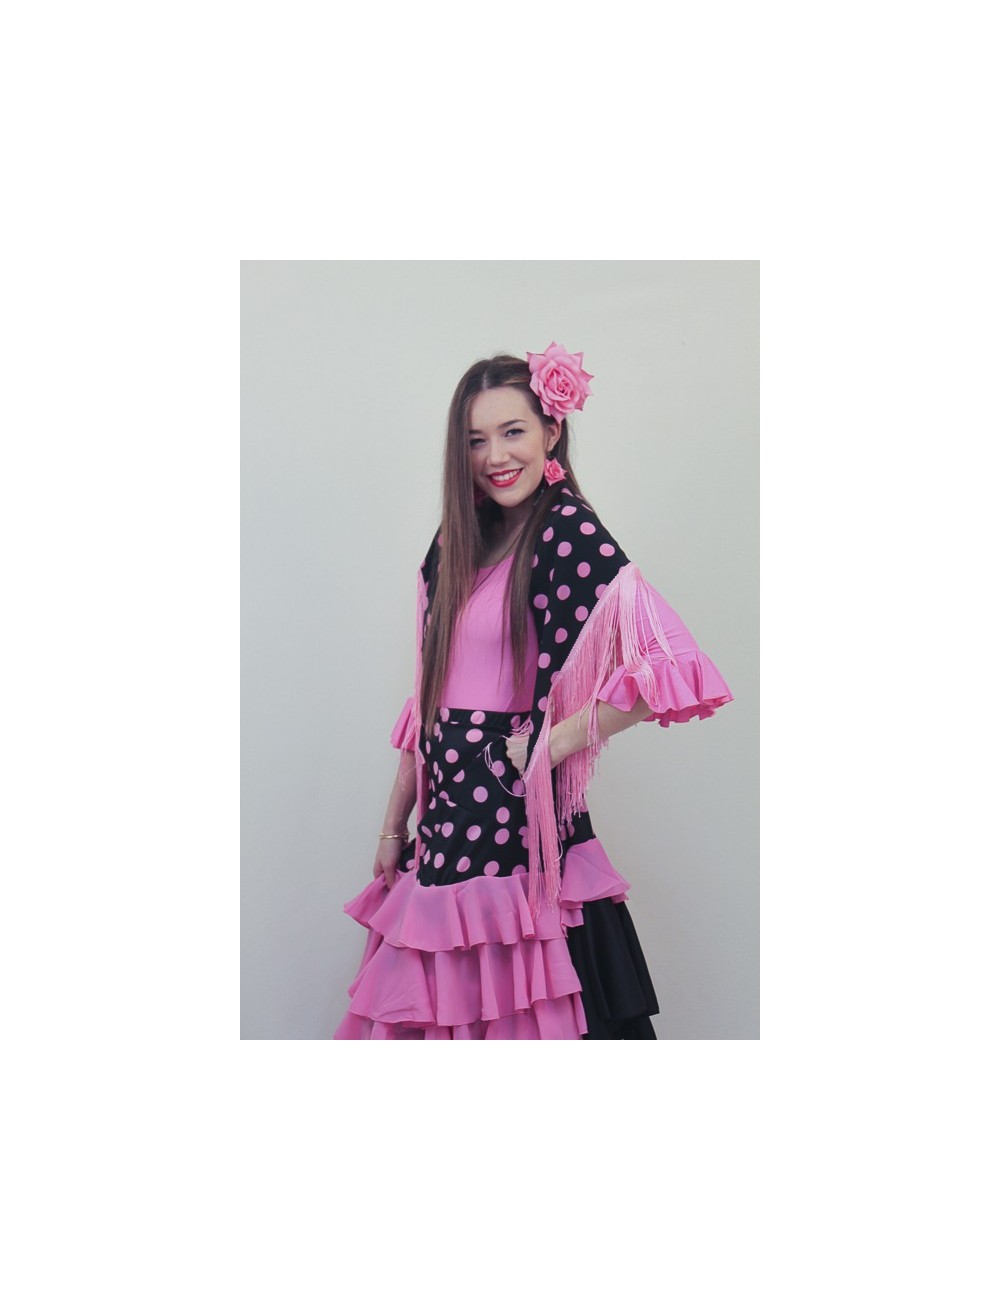 Jupe de Flamenco à pois rose et noire Madriléne 1